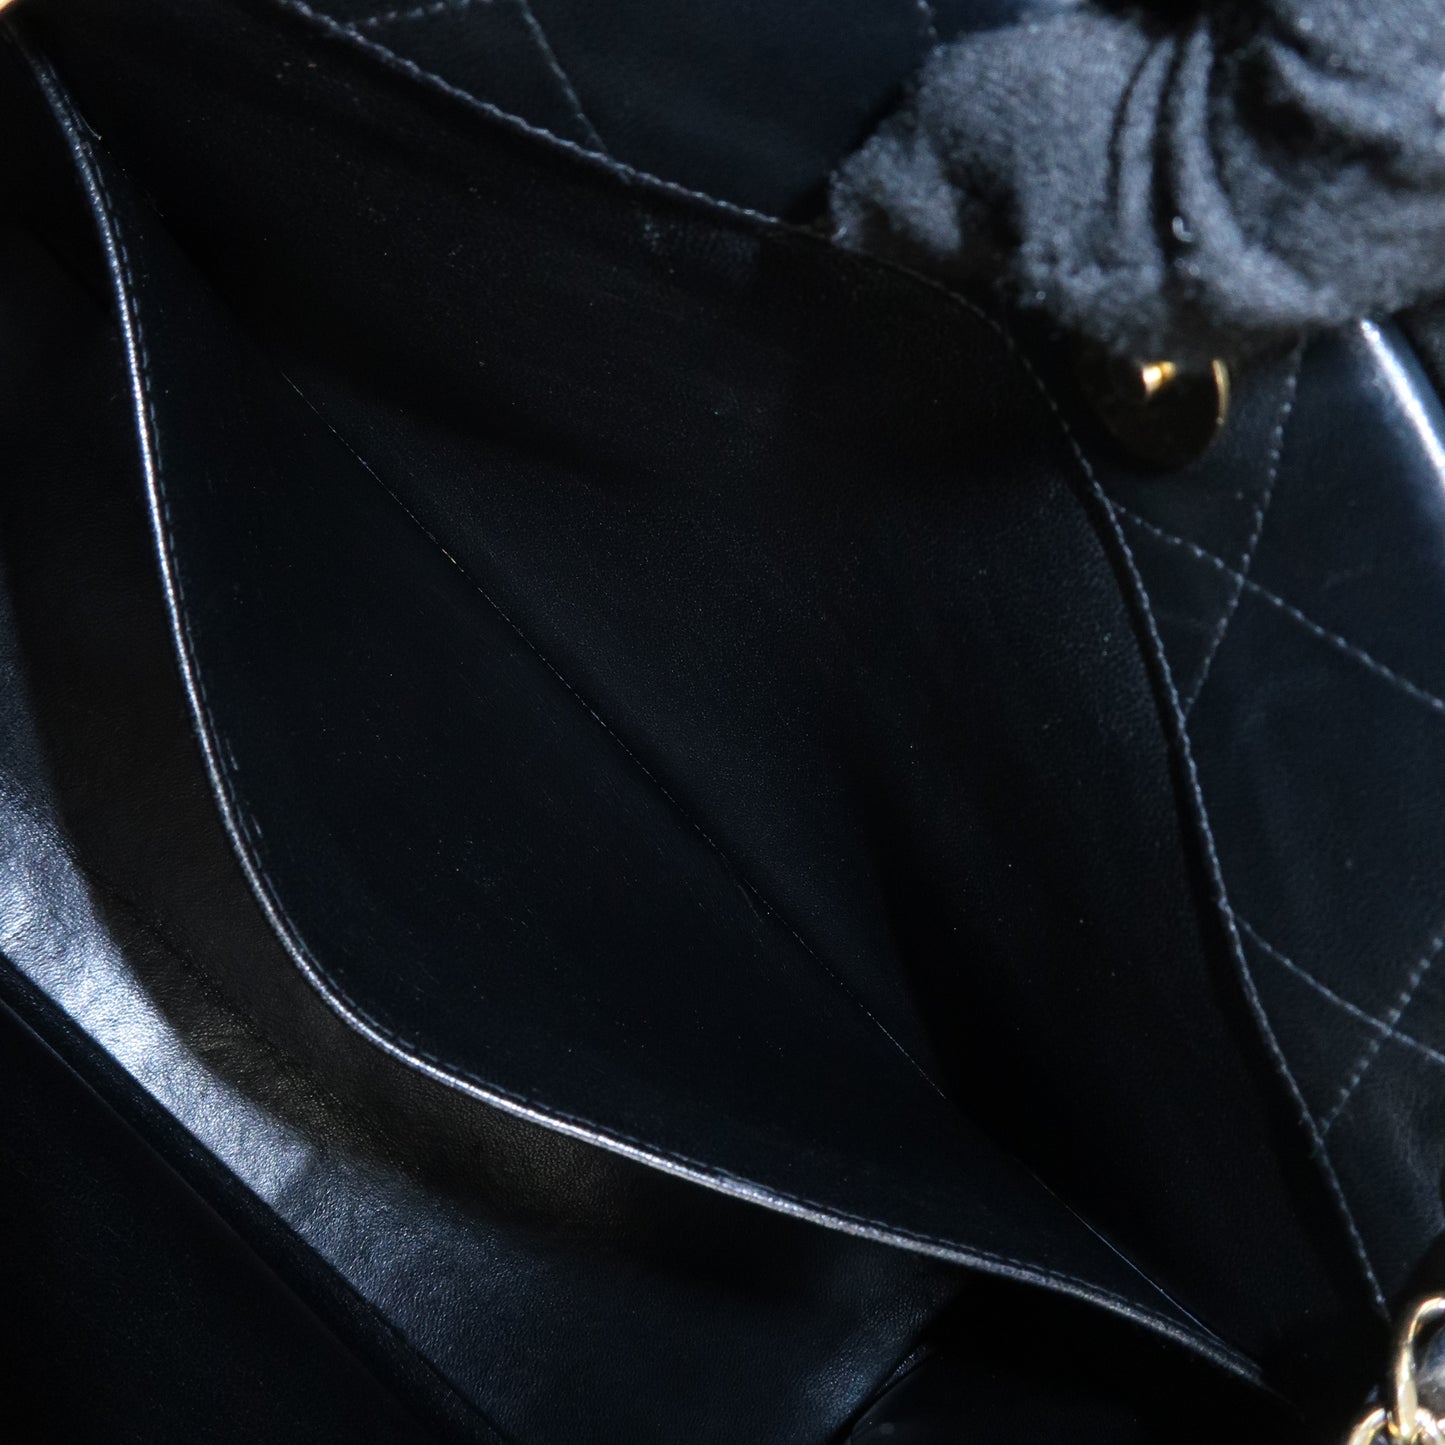 CHANEL Matelasse Lamb Skin Chain Tote Bag Hand Bag Black Gold